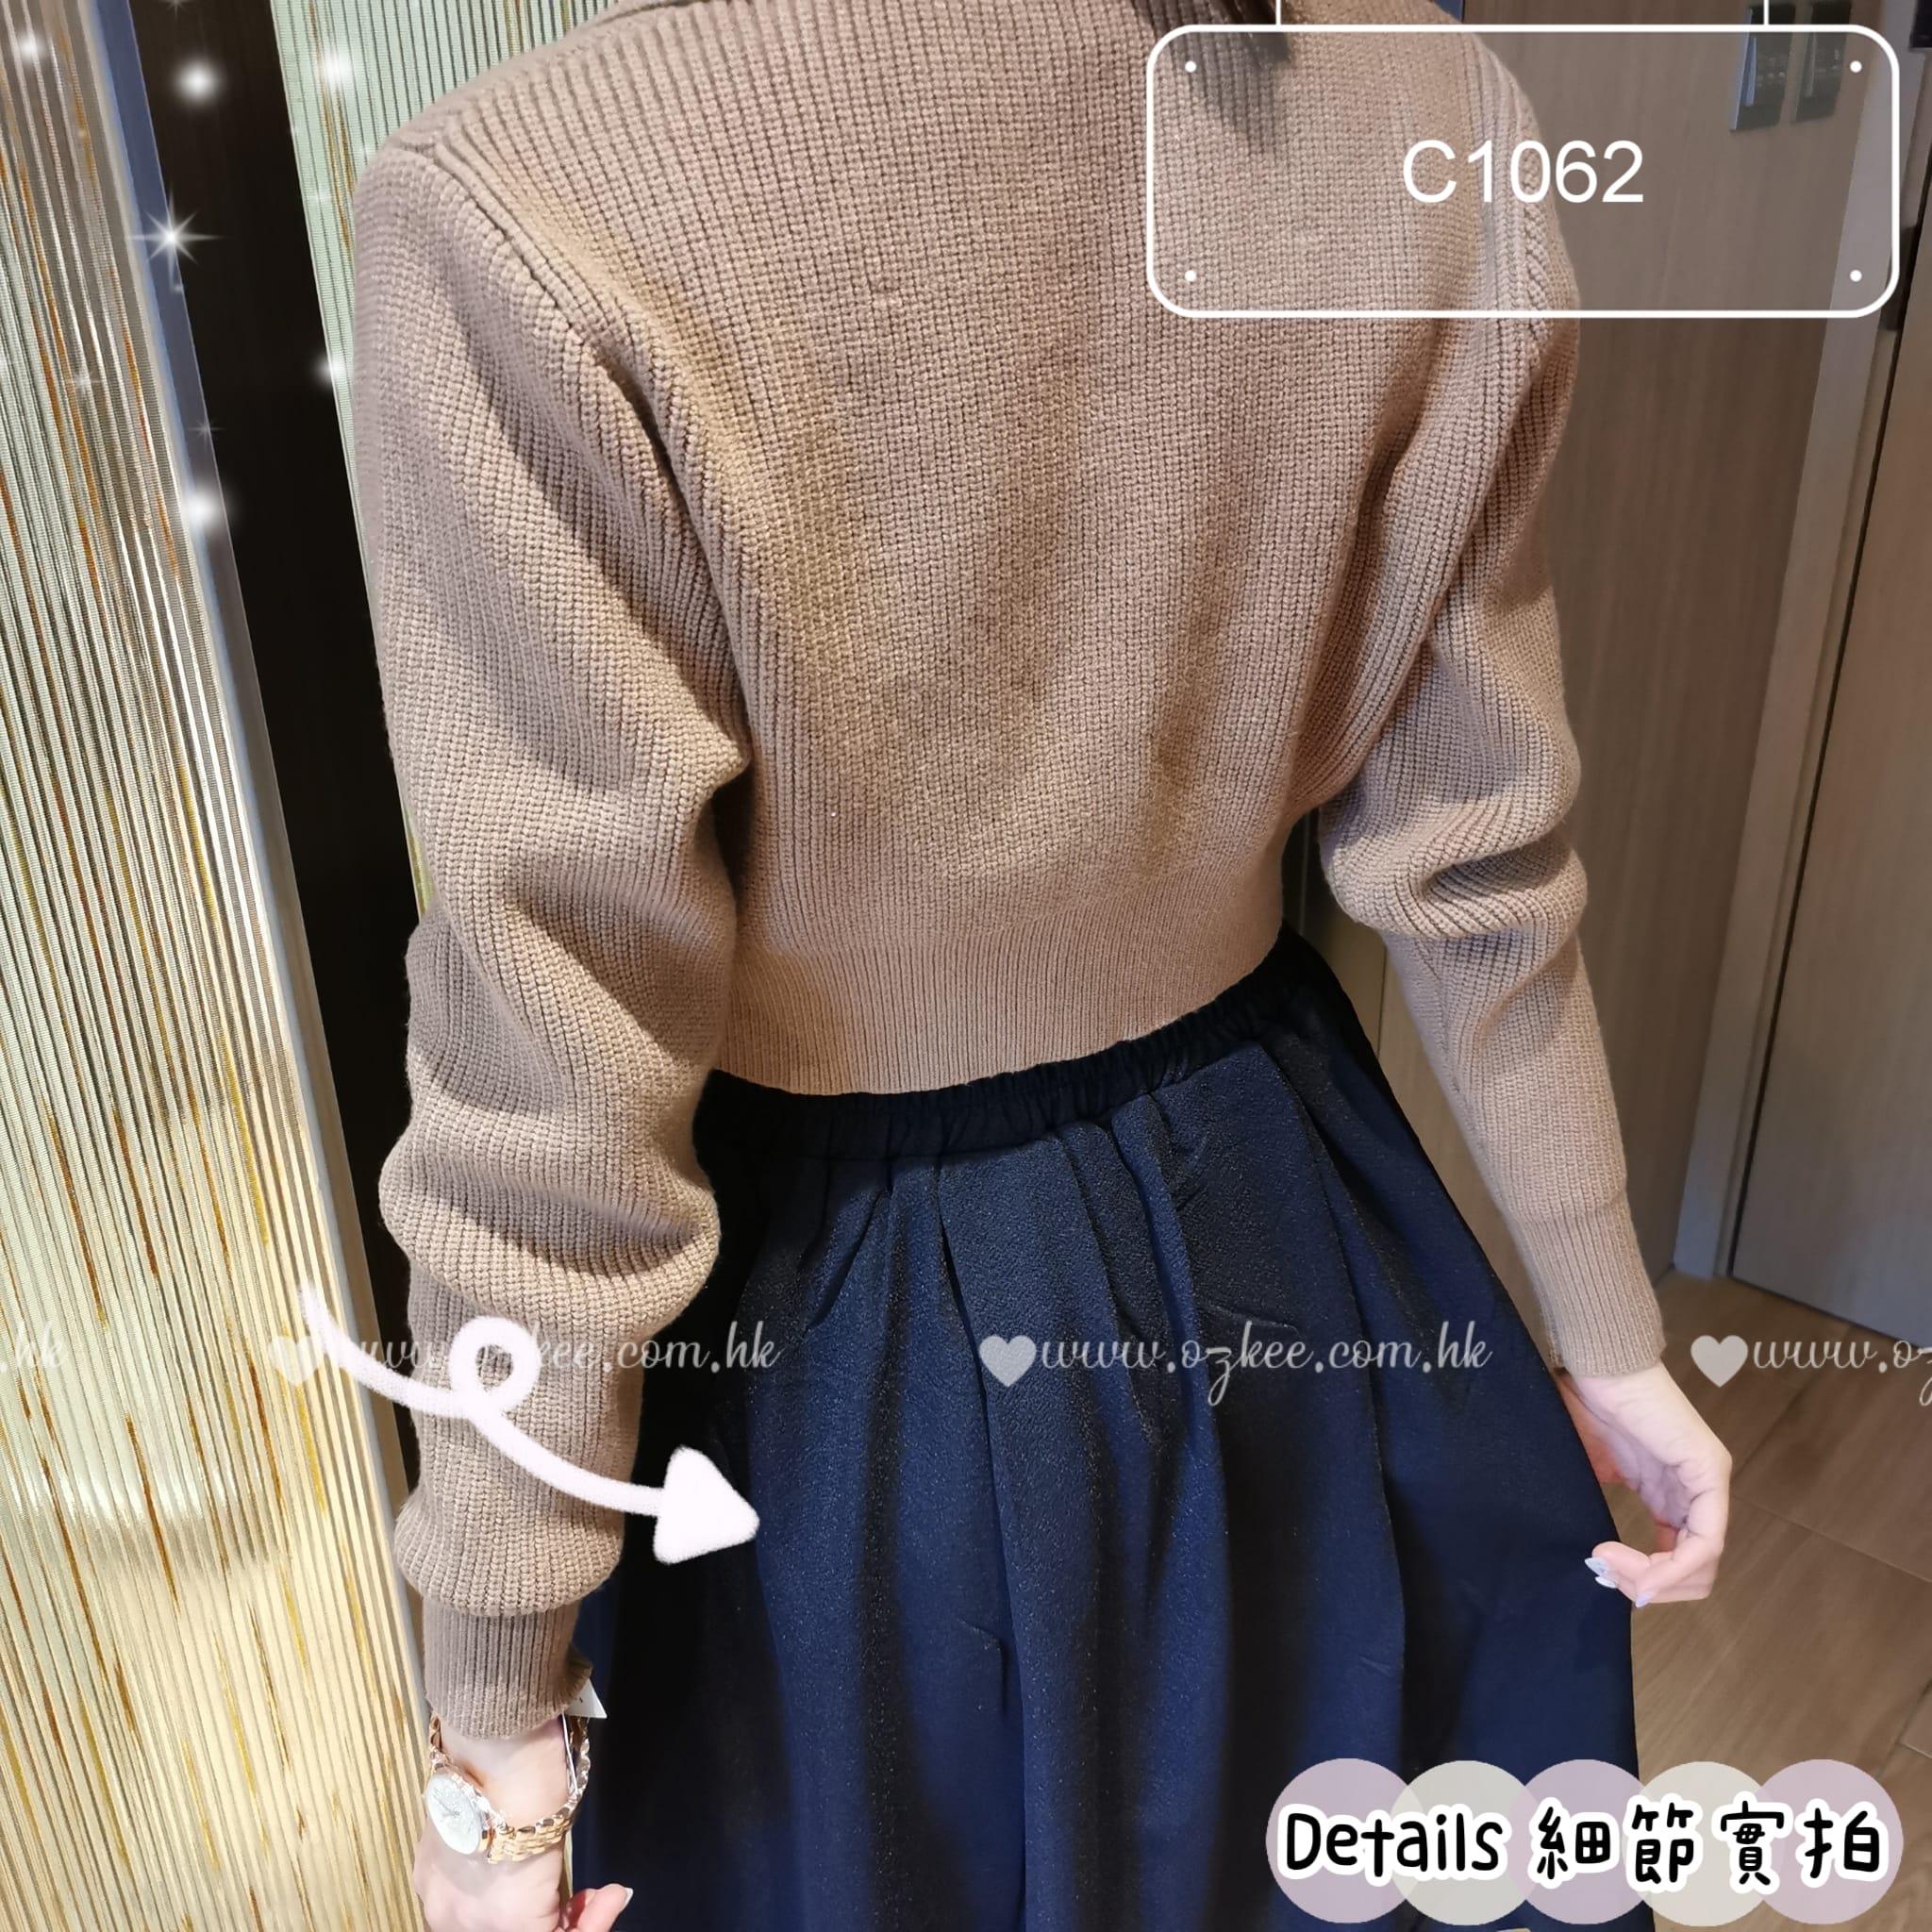 👑期間限定👑韓國熱賣新款女裝純色復古學院風中短裙傘裙 - C1062